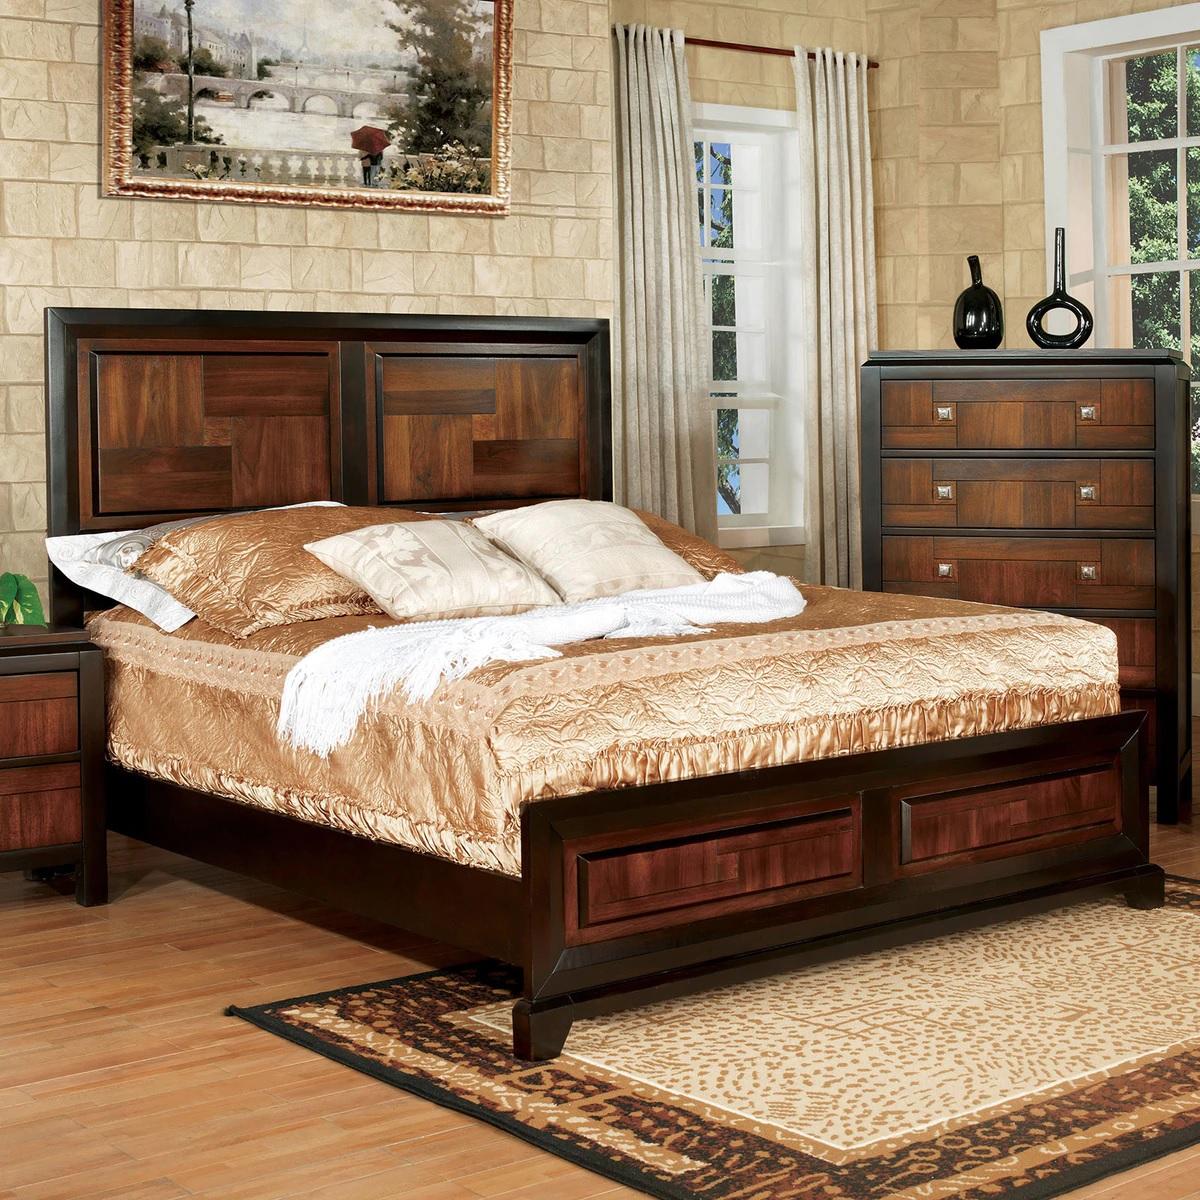 

    
Transitional Acacia & Walnut Solid Wood Queen Bedroom Set 6pcs Furniture of America CM7152-Q Patra
